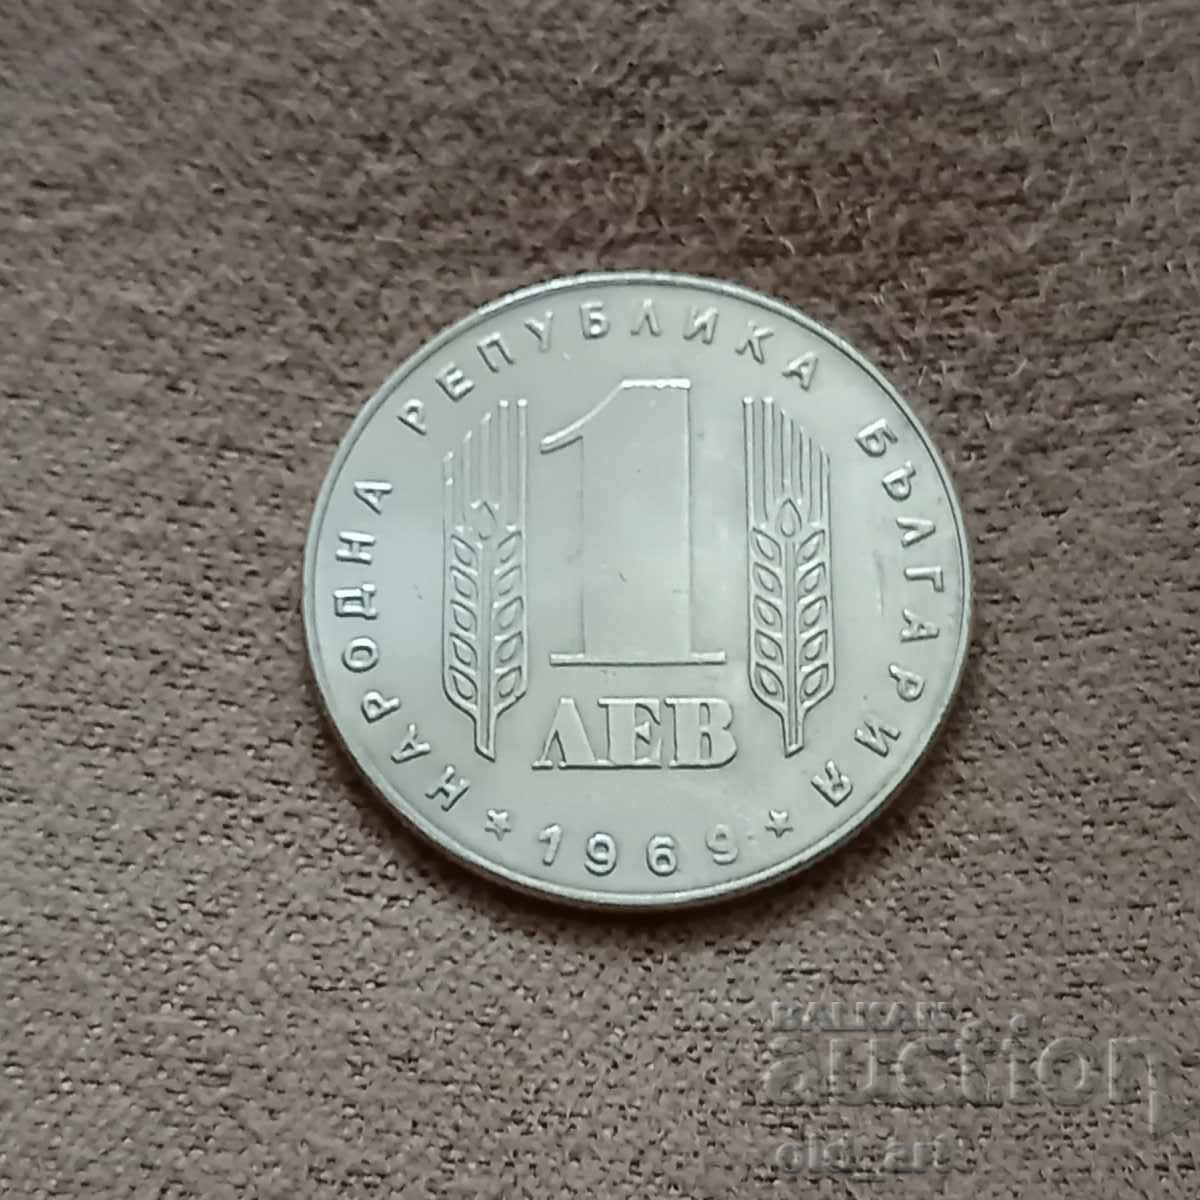 Monedă - 1 lev 1969